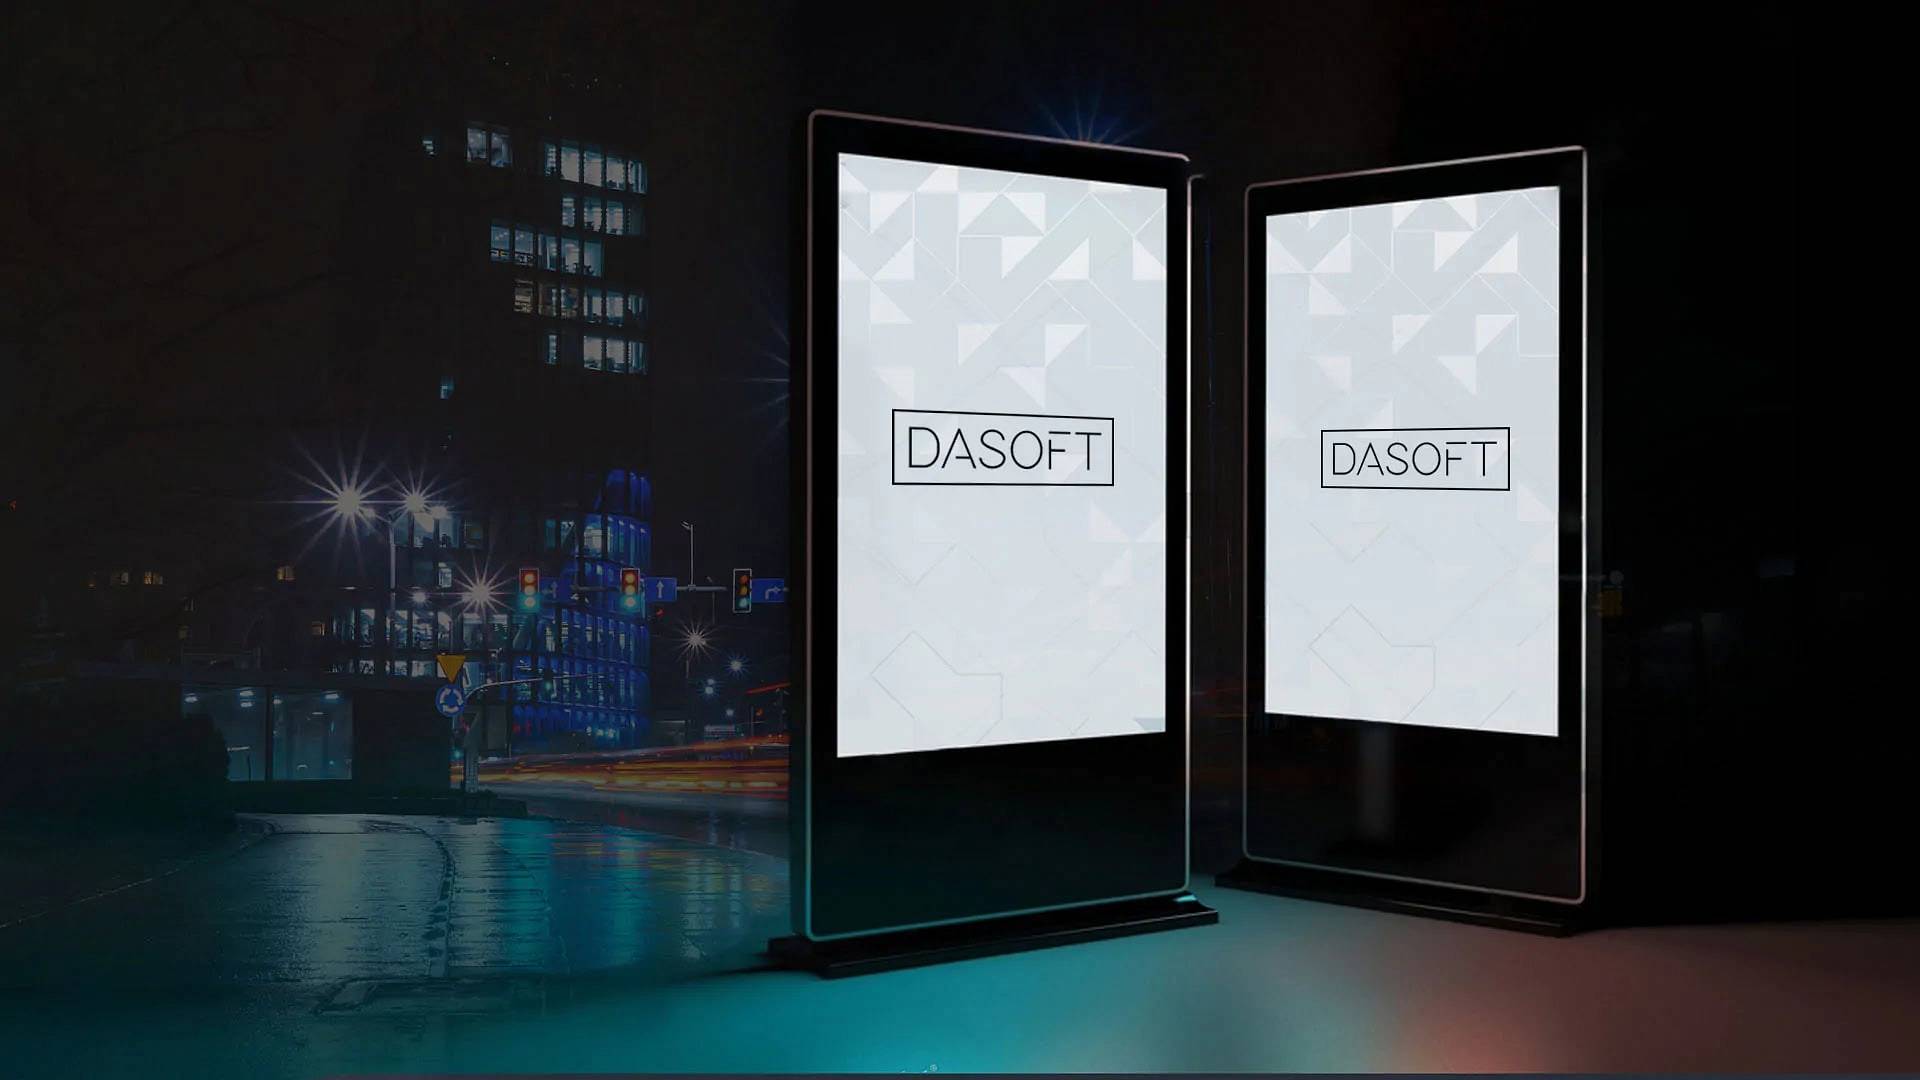 System-Digital-Signage-Dasoft.jpg